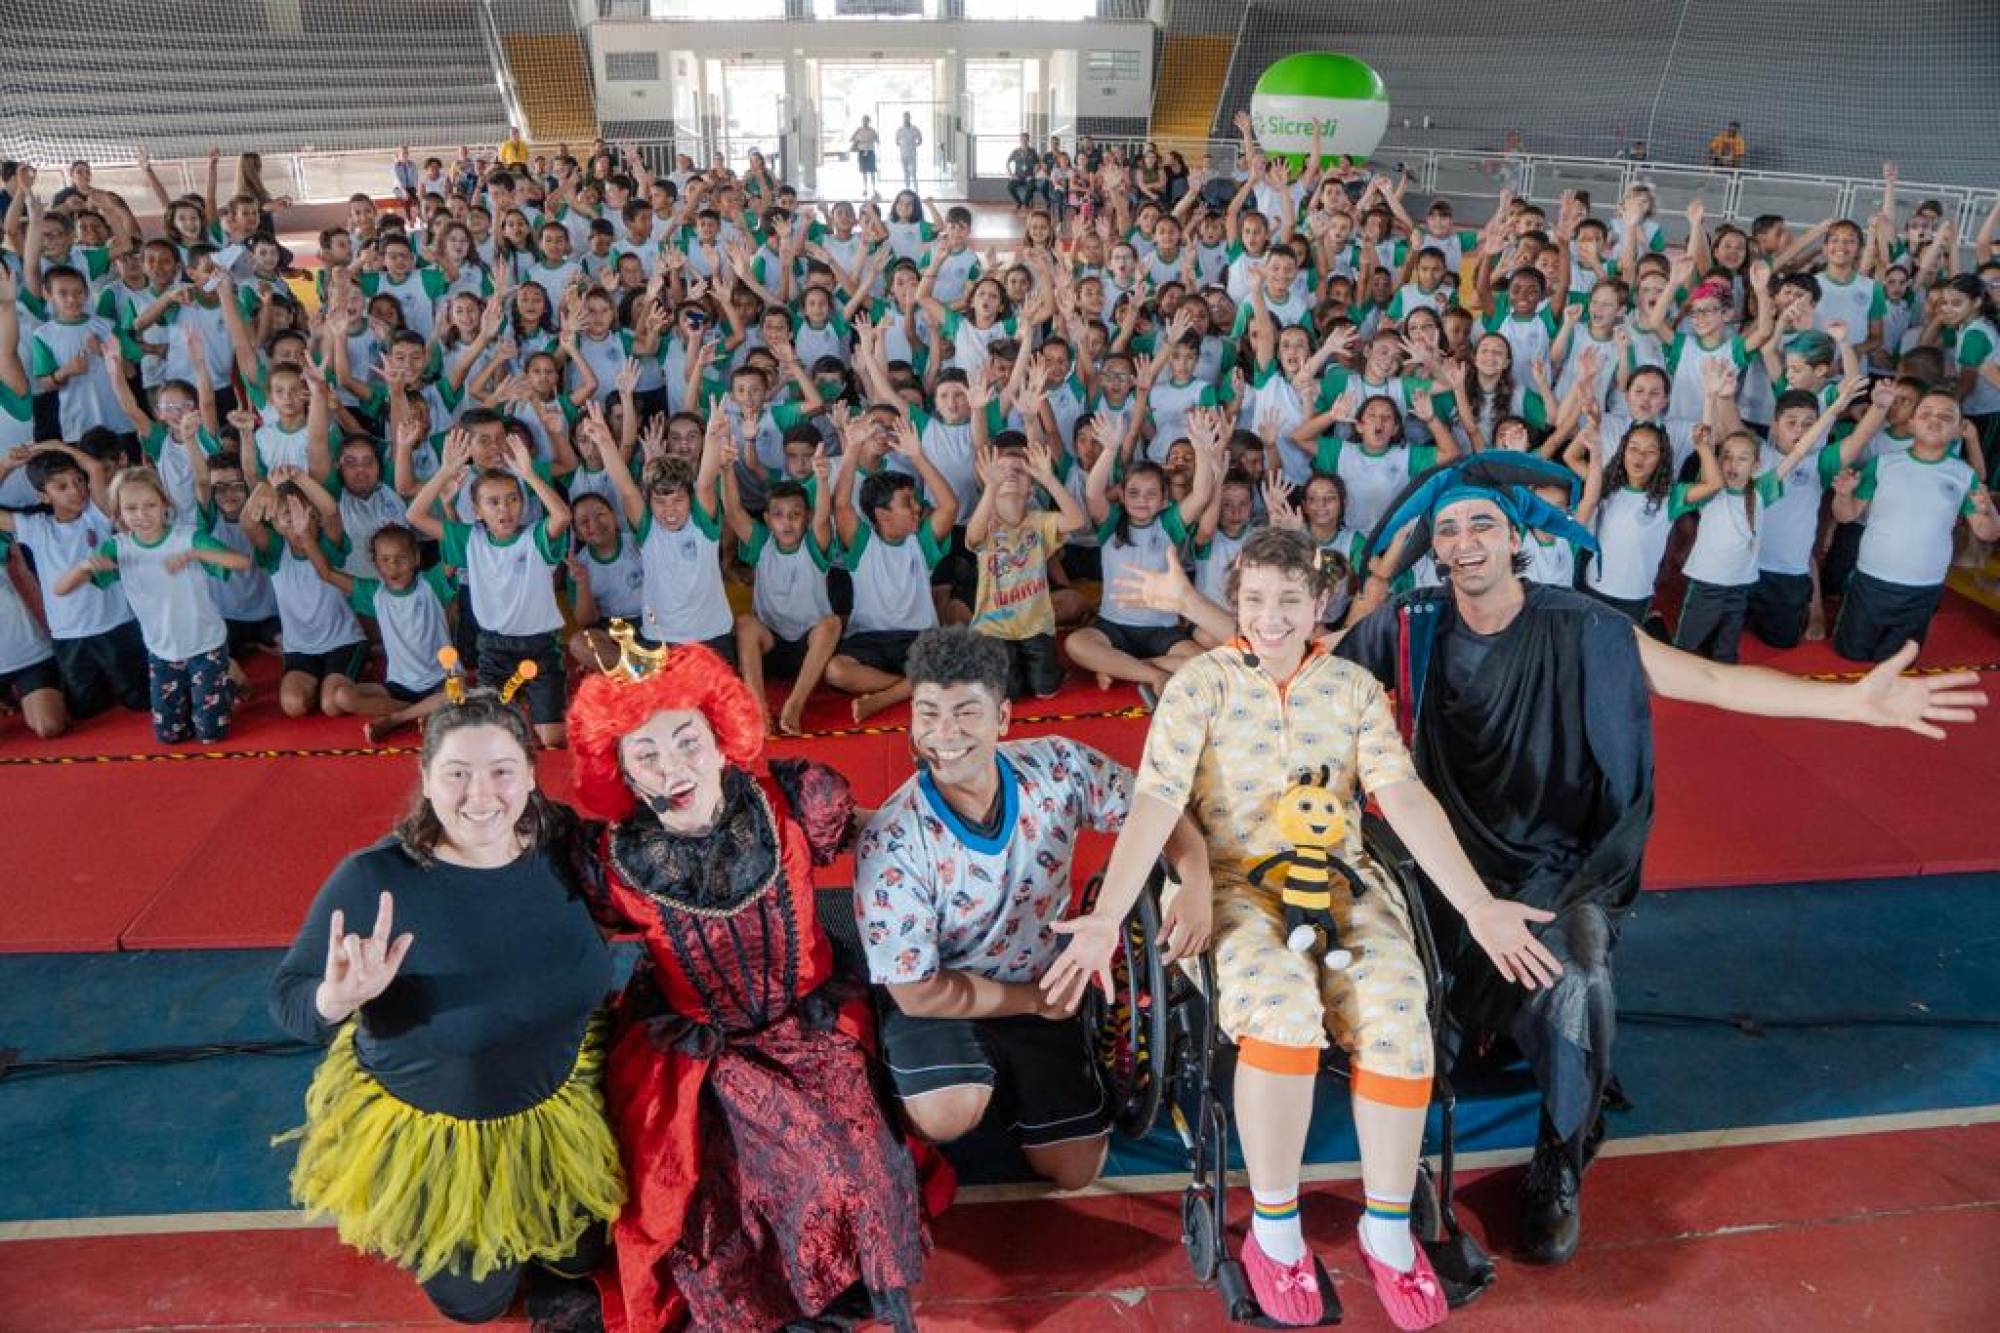 Teatro aborda cidadania e inclusão e leva cultura a 310 alunos de escolas municipais de Aguaí